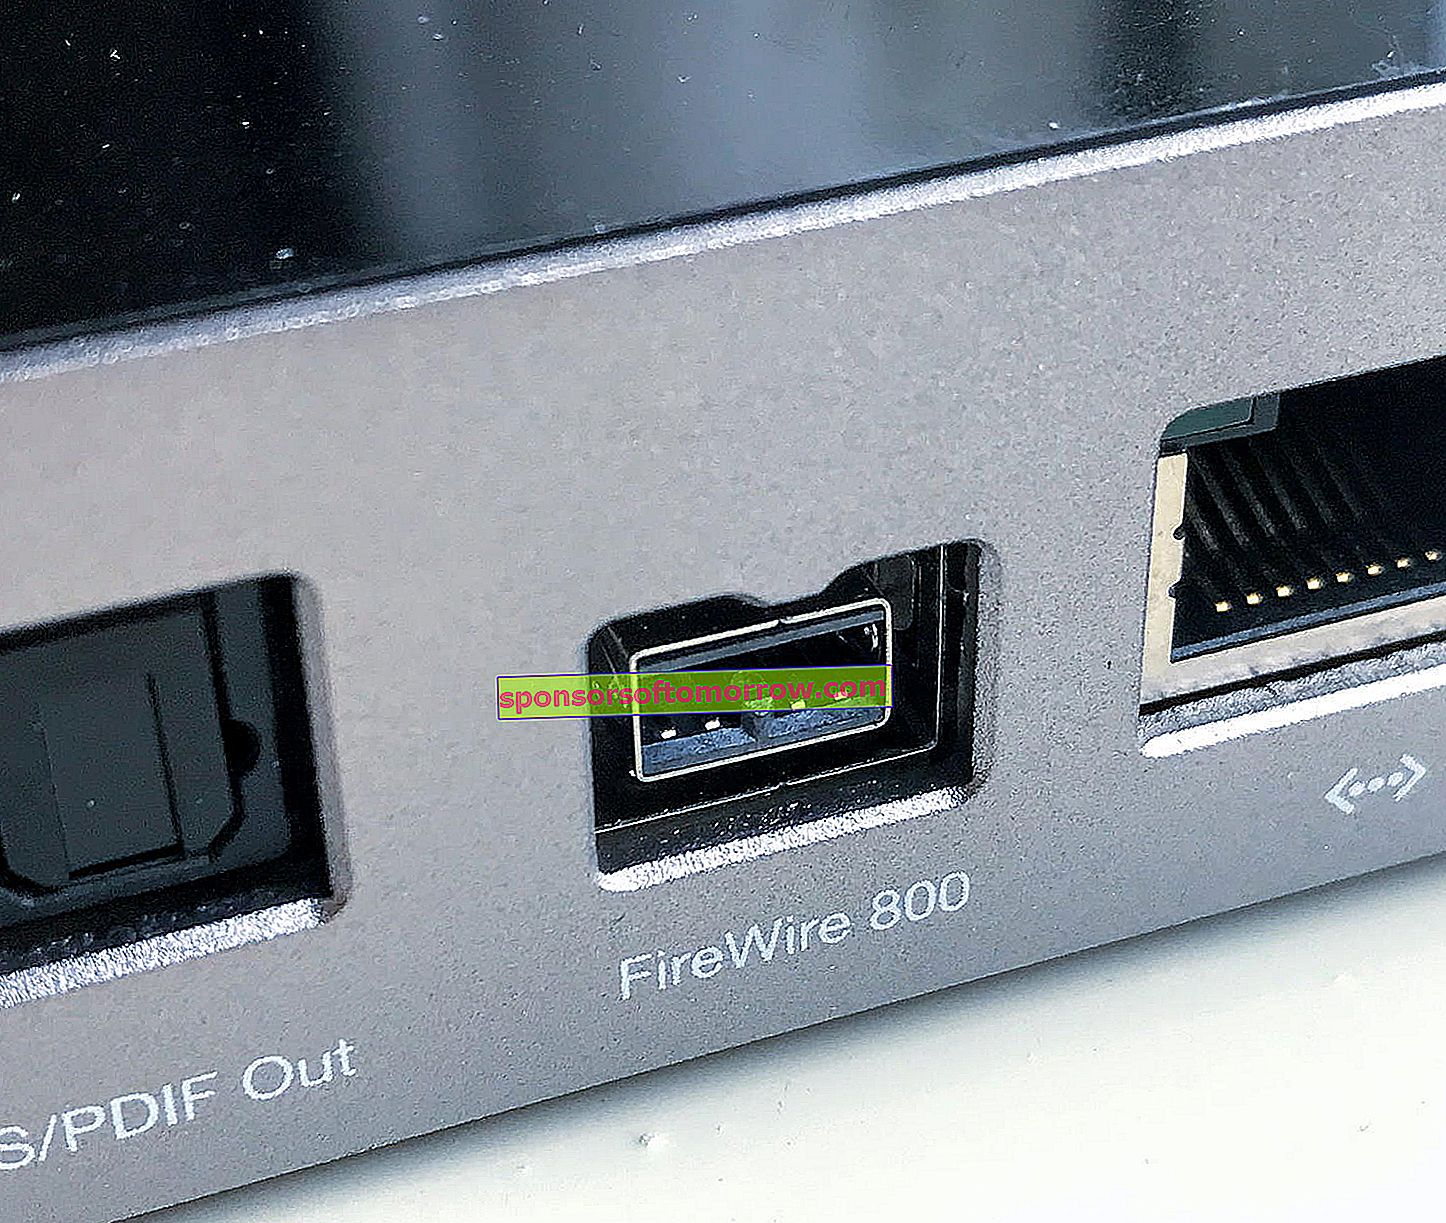 Firewireインターフェースとは何か、USBとの違い